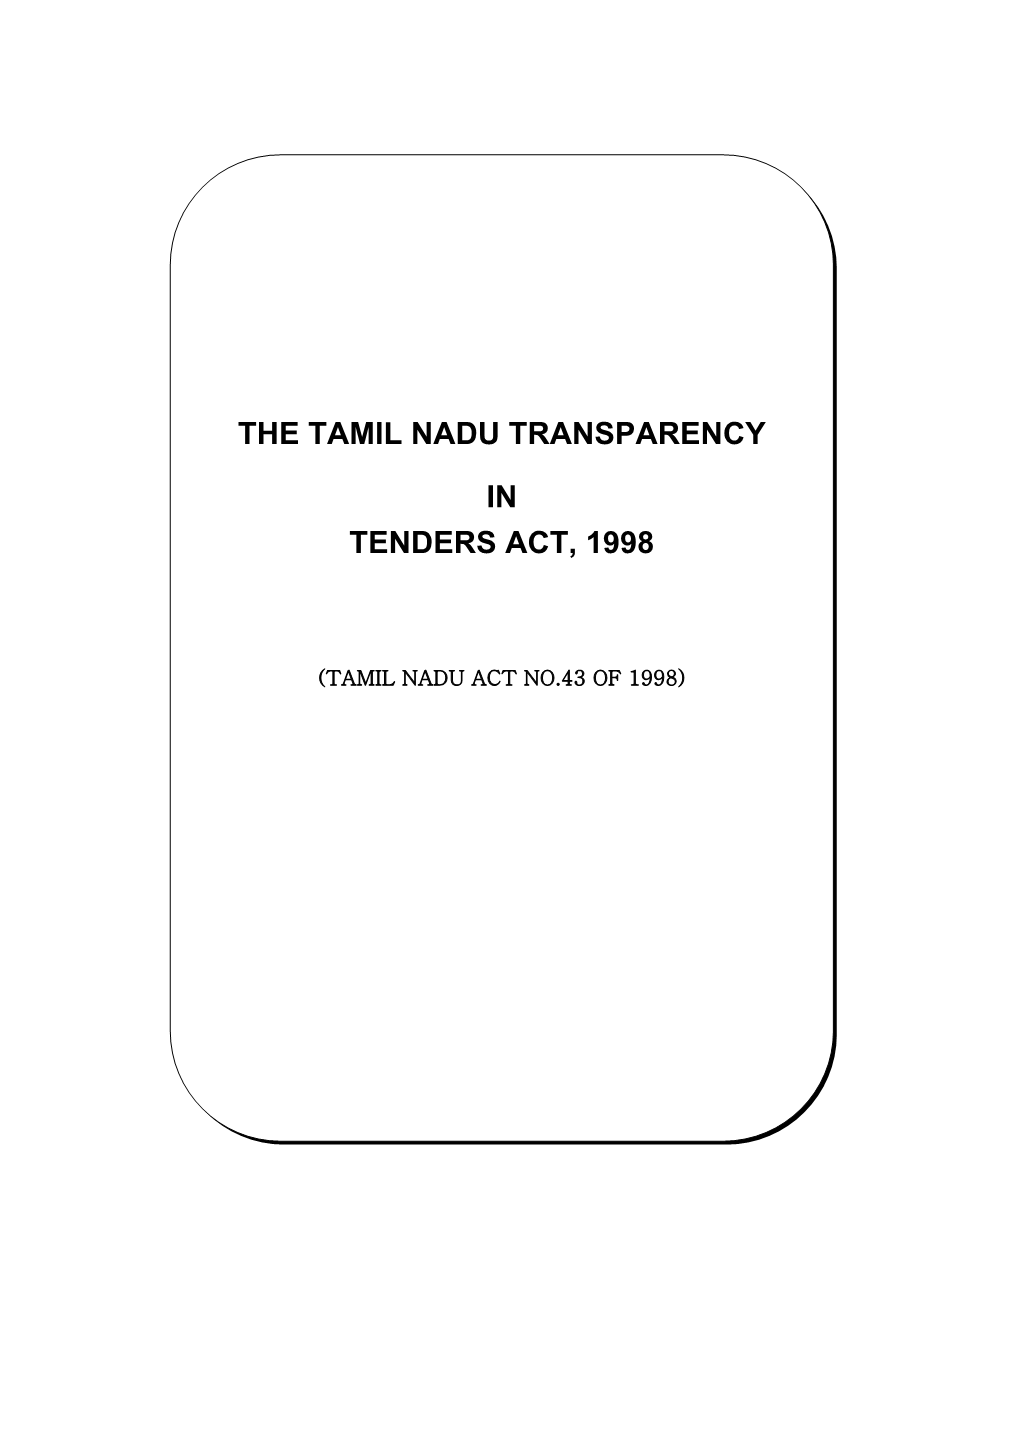 The Tamil Nadu Transparency in Tenders Act, 1998